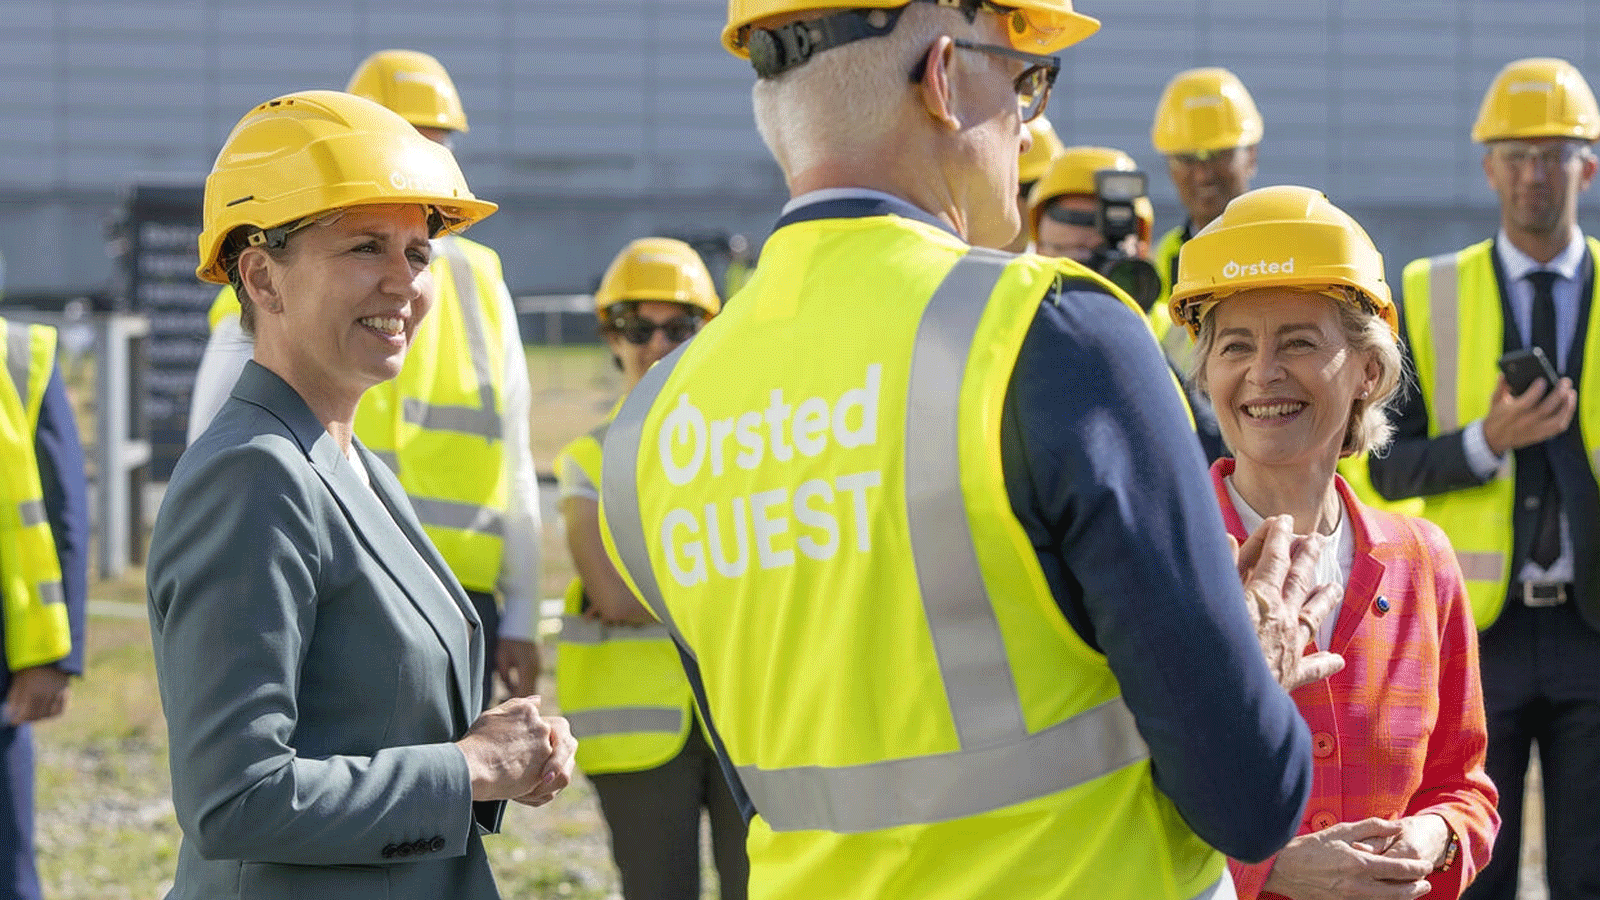 رئيسة وزراء الدنمارك ميتي فريدركستن (يسار) مع رئيسة المفوضية الأوروبية أورسولا فون دير لايين مع المدير التنفيذي لشركة أورستد مادس نيبر خارج محطة كهرباء قرب كوبنهاغن في الدنمارك. 17 حزيران/يونيو 2021 